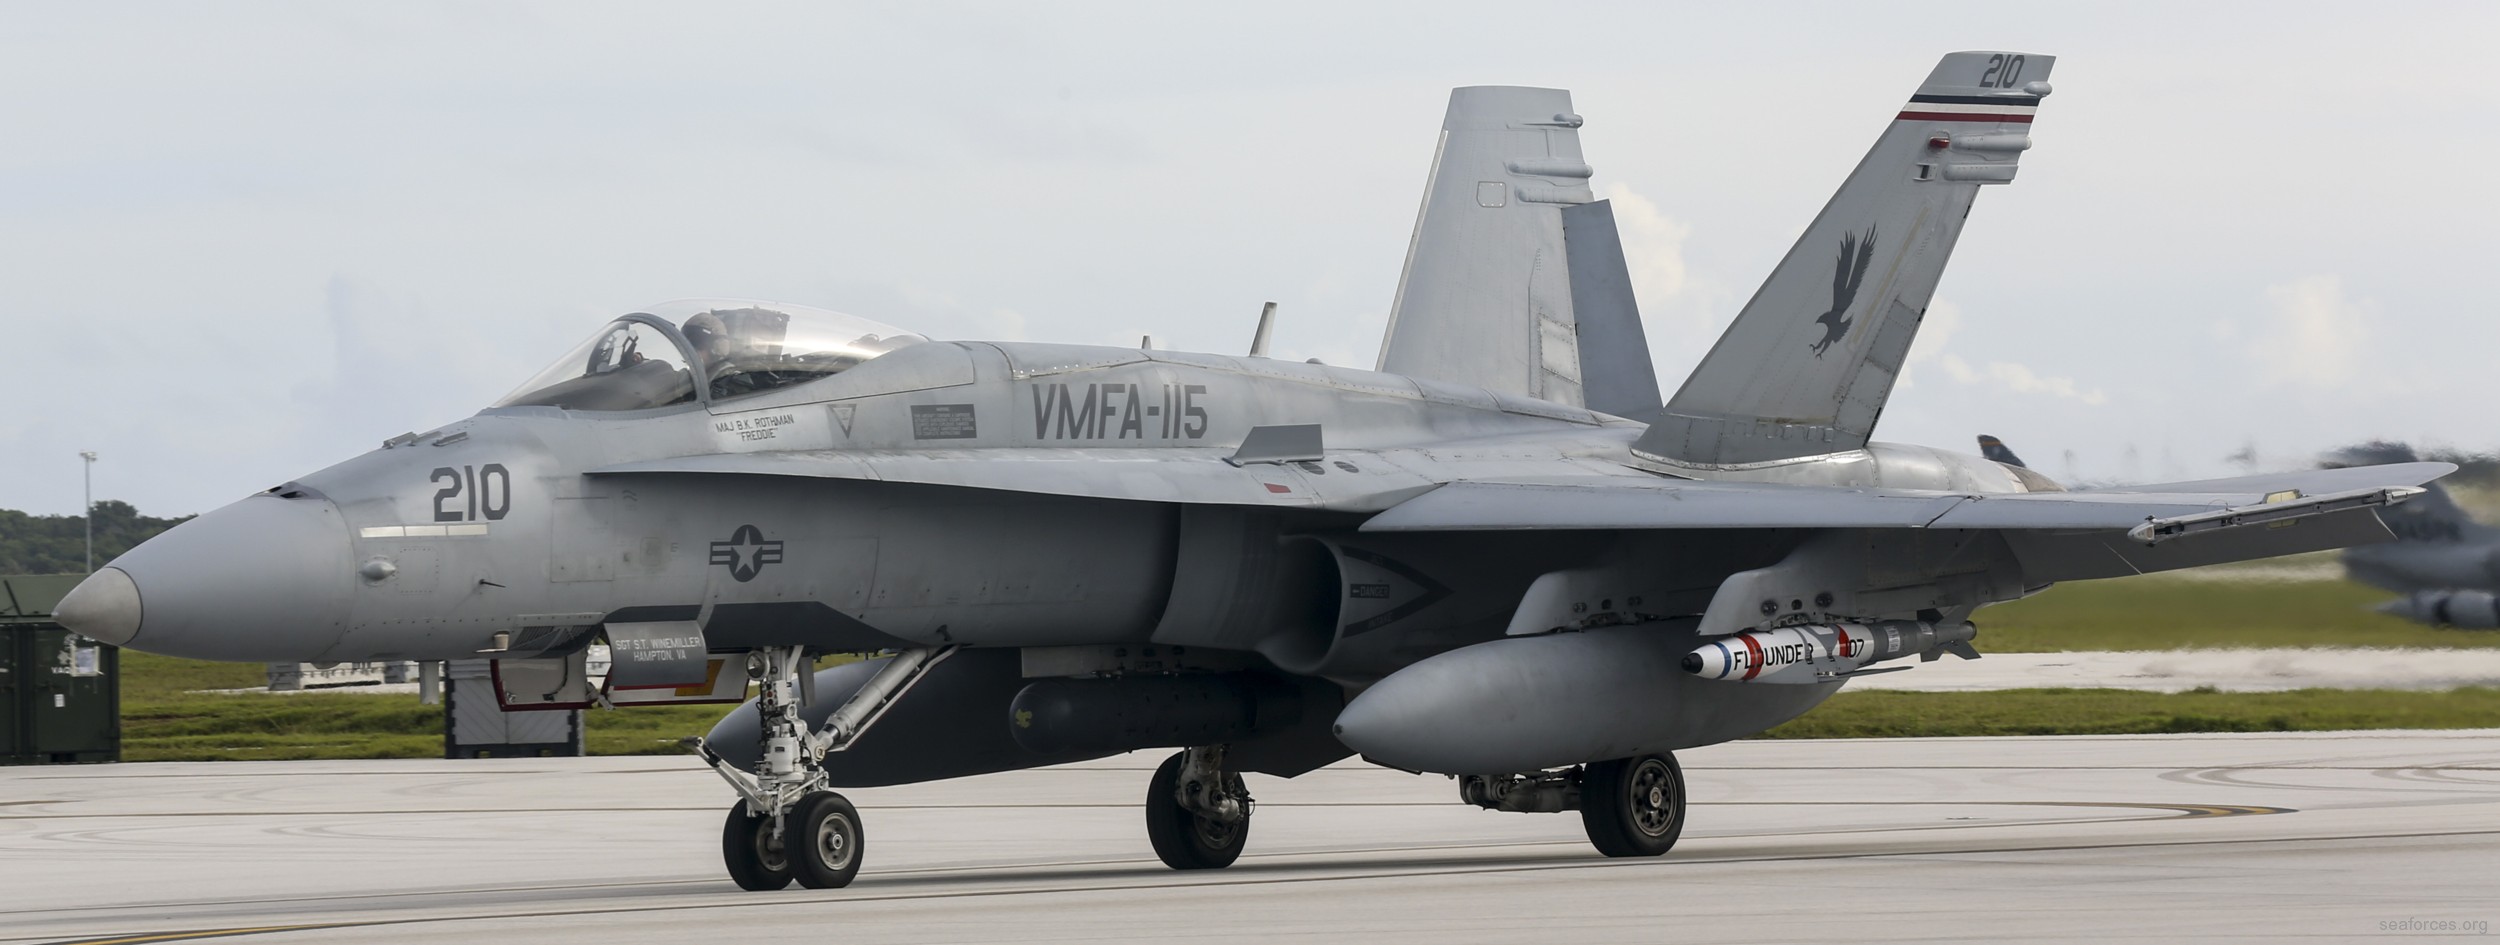 vmfa-115 silver eagles marine fighter attack squadron f/a-18a+ hornet 128